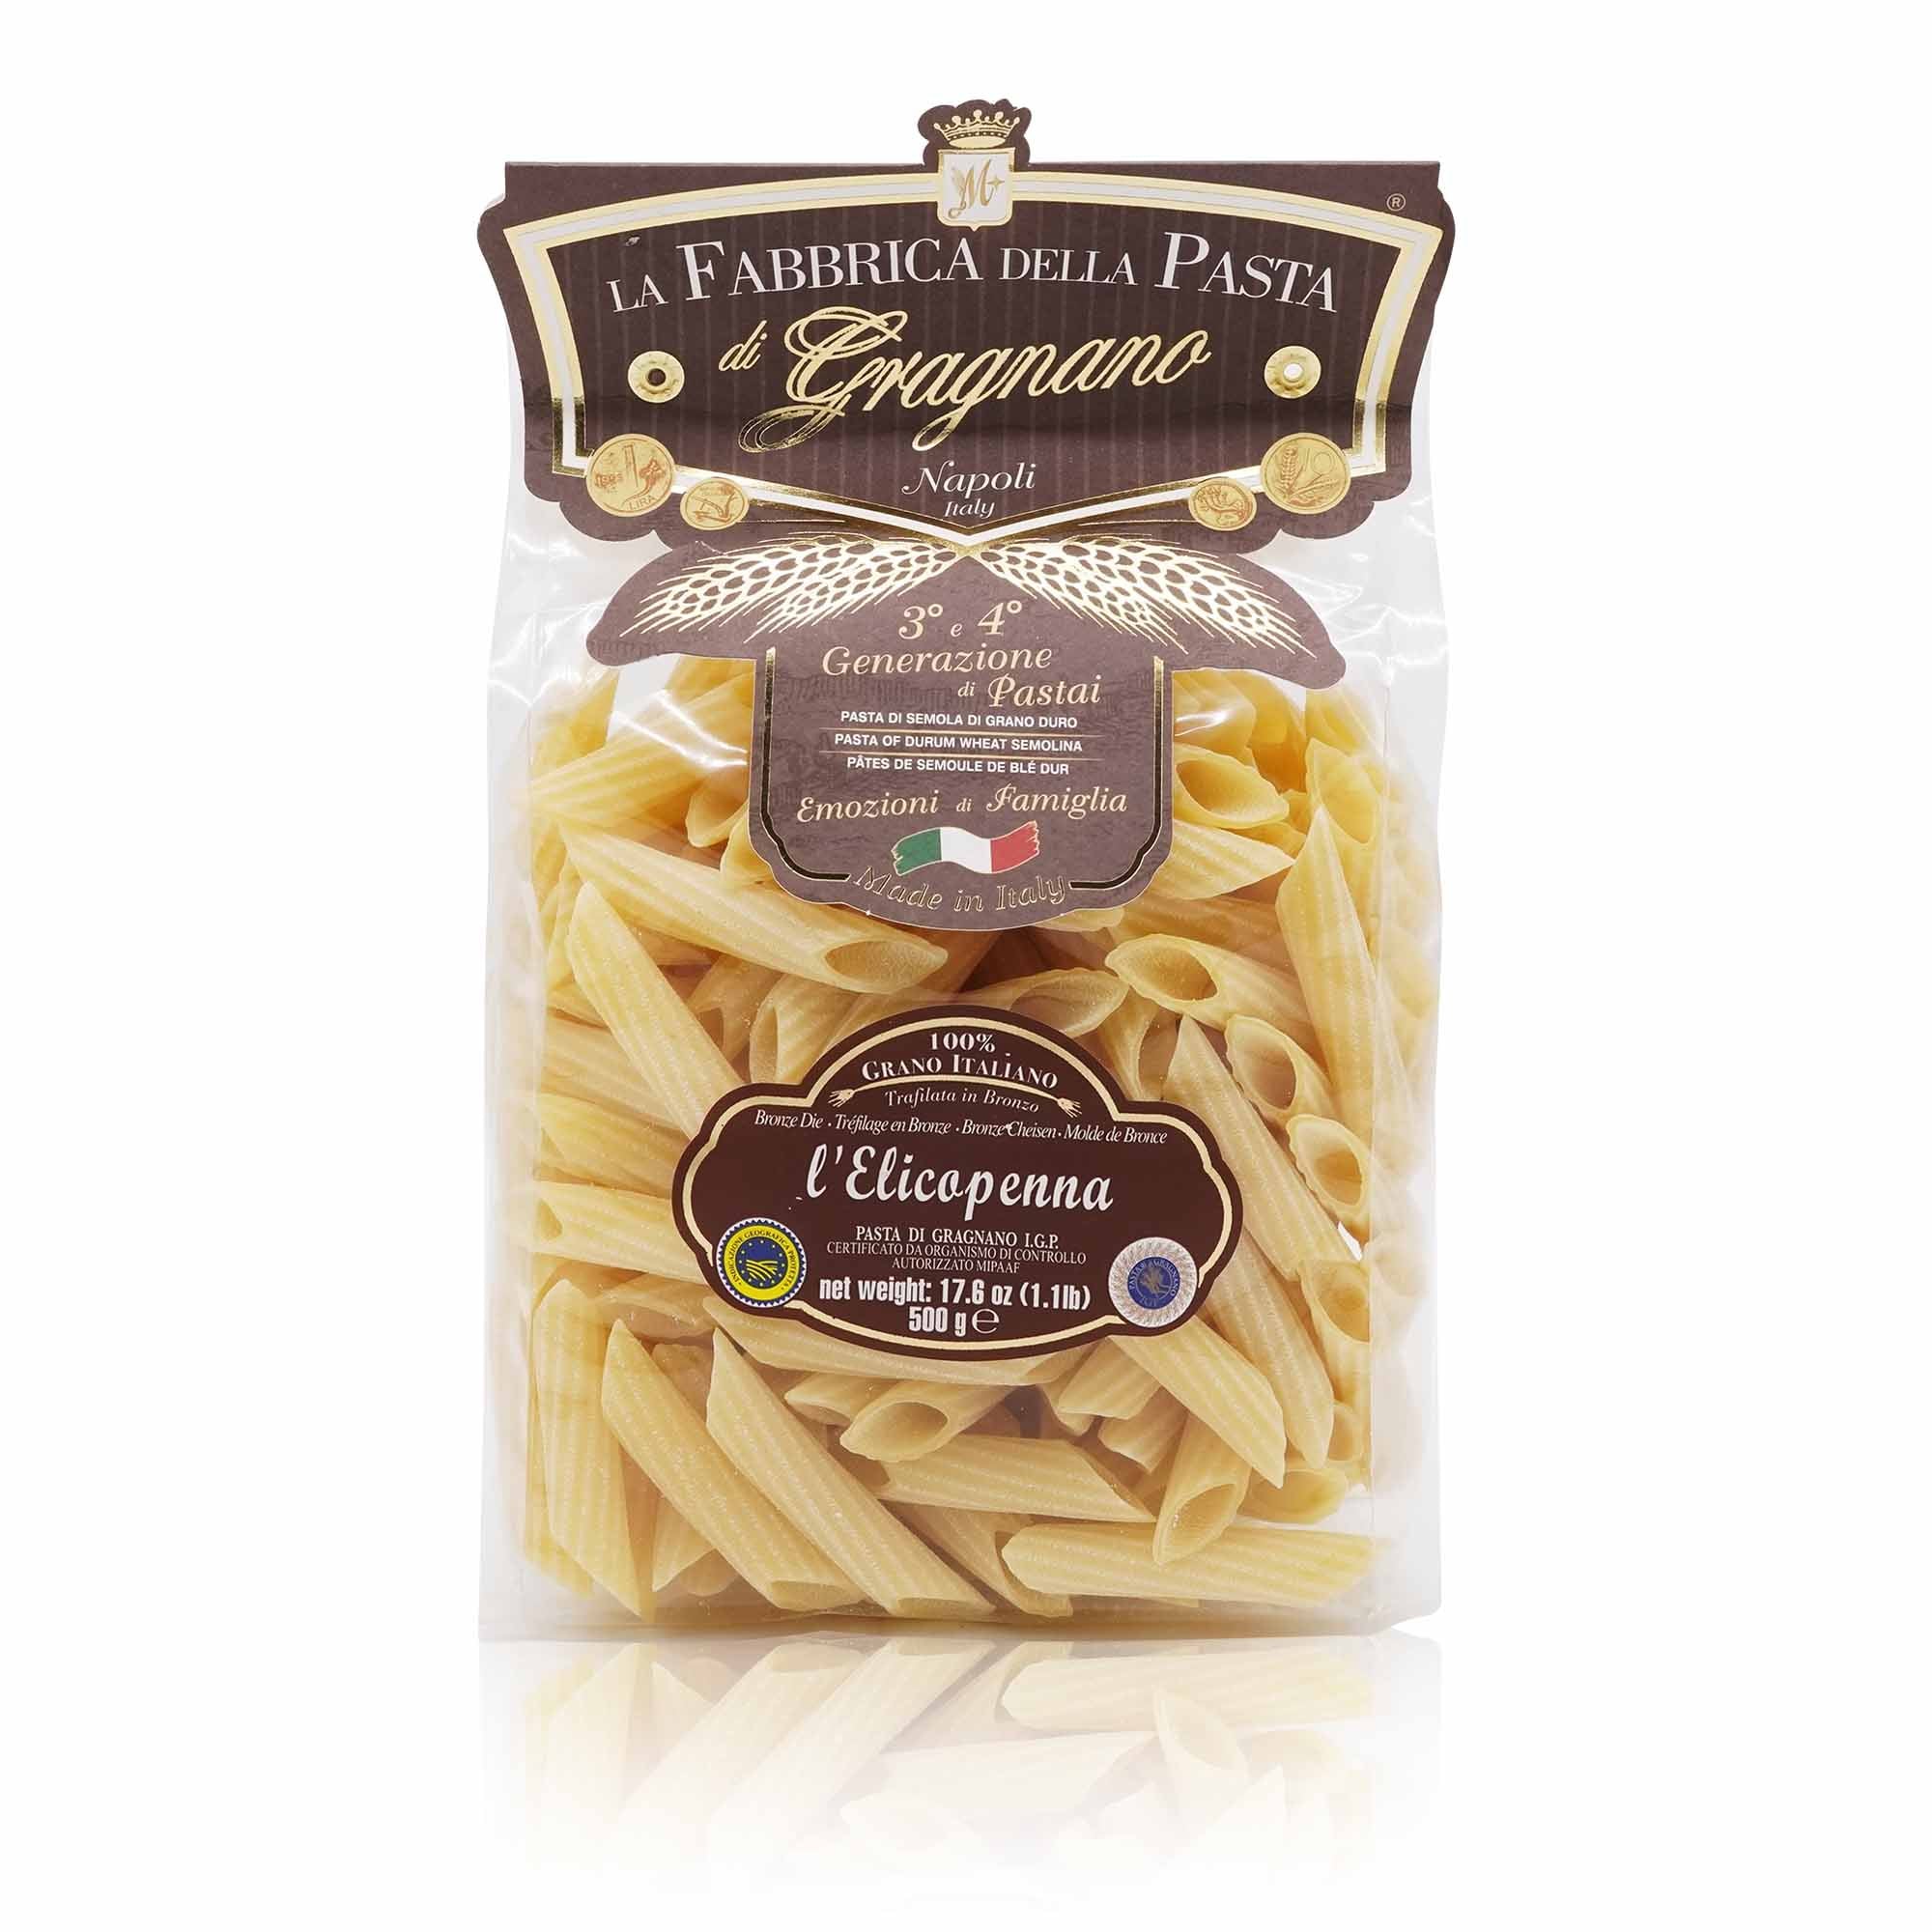 LA FABBRICA DELLA PASTA L'Elicopenna Gragnano – Elicopenna-Pasta - 0,5kg